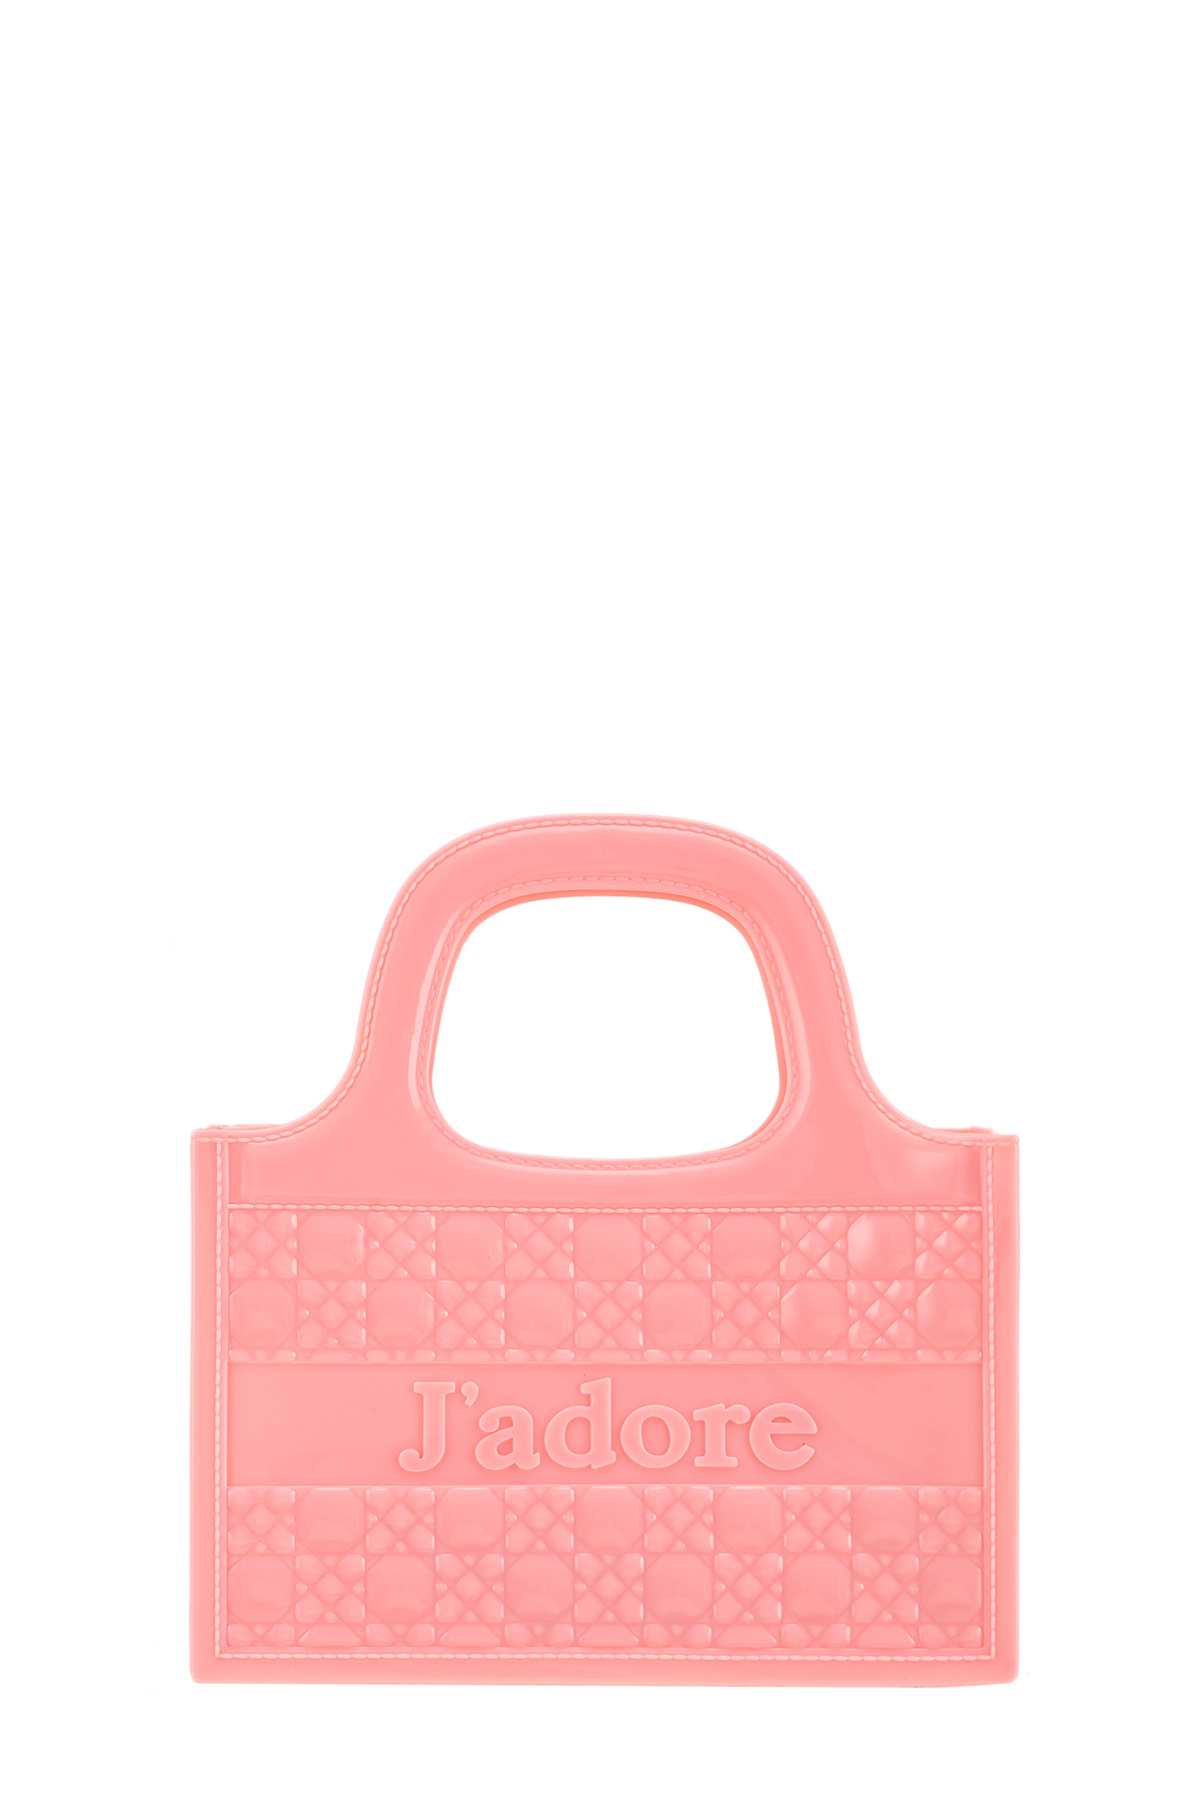 JADORE Top Handle Crossbody Jelly Bag